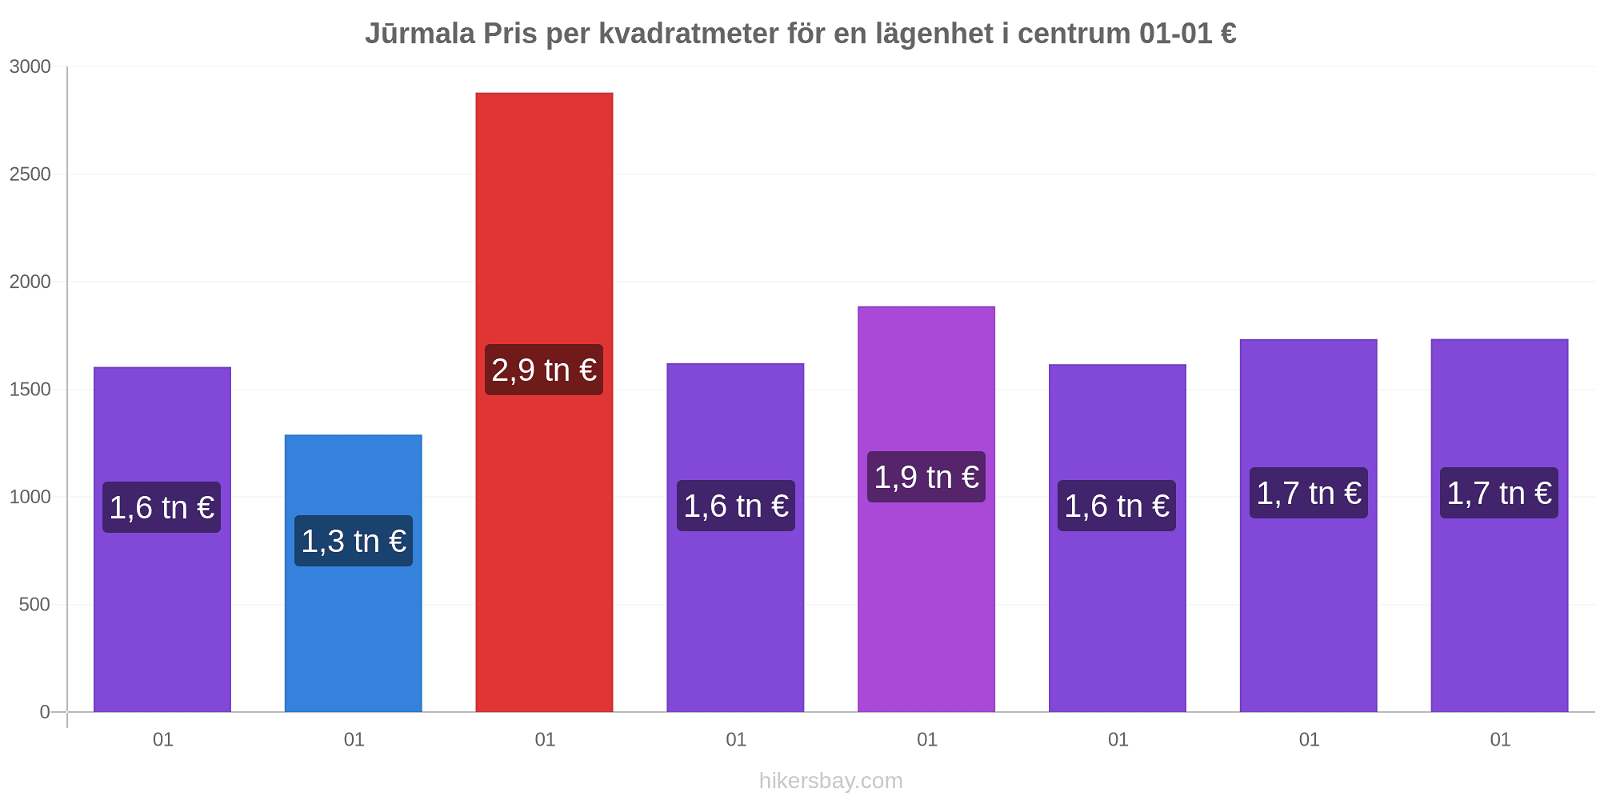 Jūrmala prisförändringar Pris per kvadratmeter för en lägenhet i centrum hikersbay.com